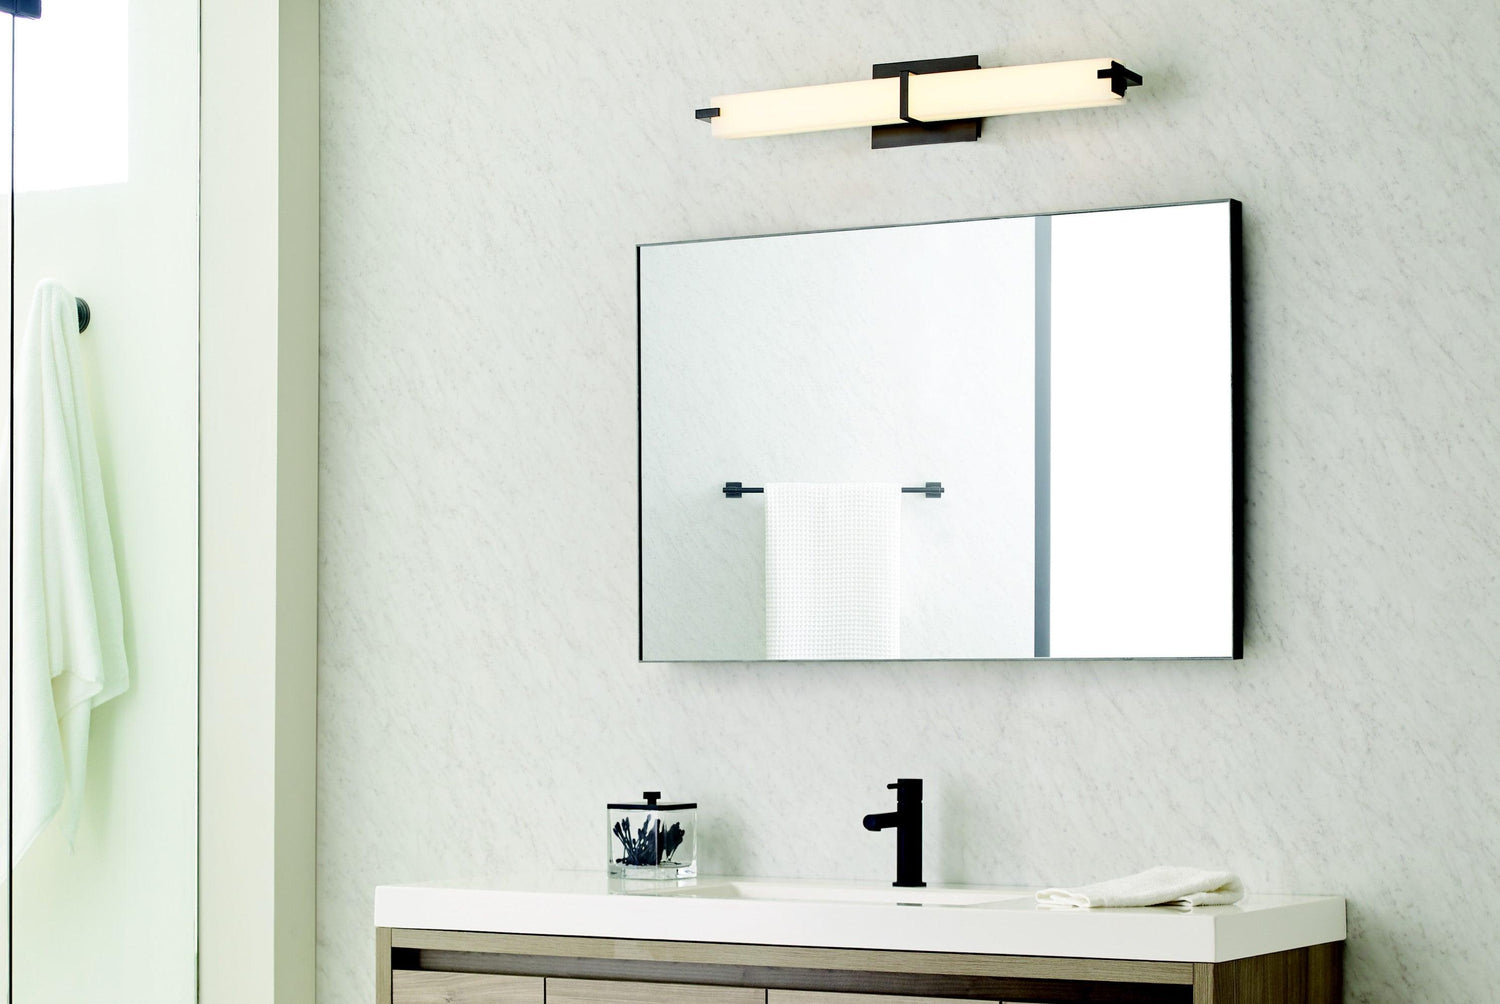 How to Choose the Best Bathroom Vanity Lighting